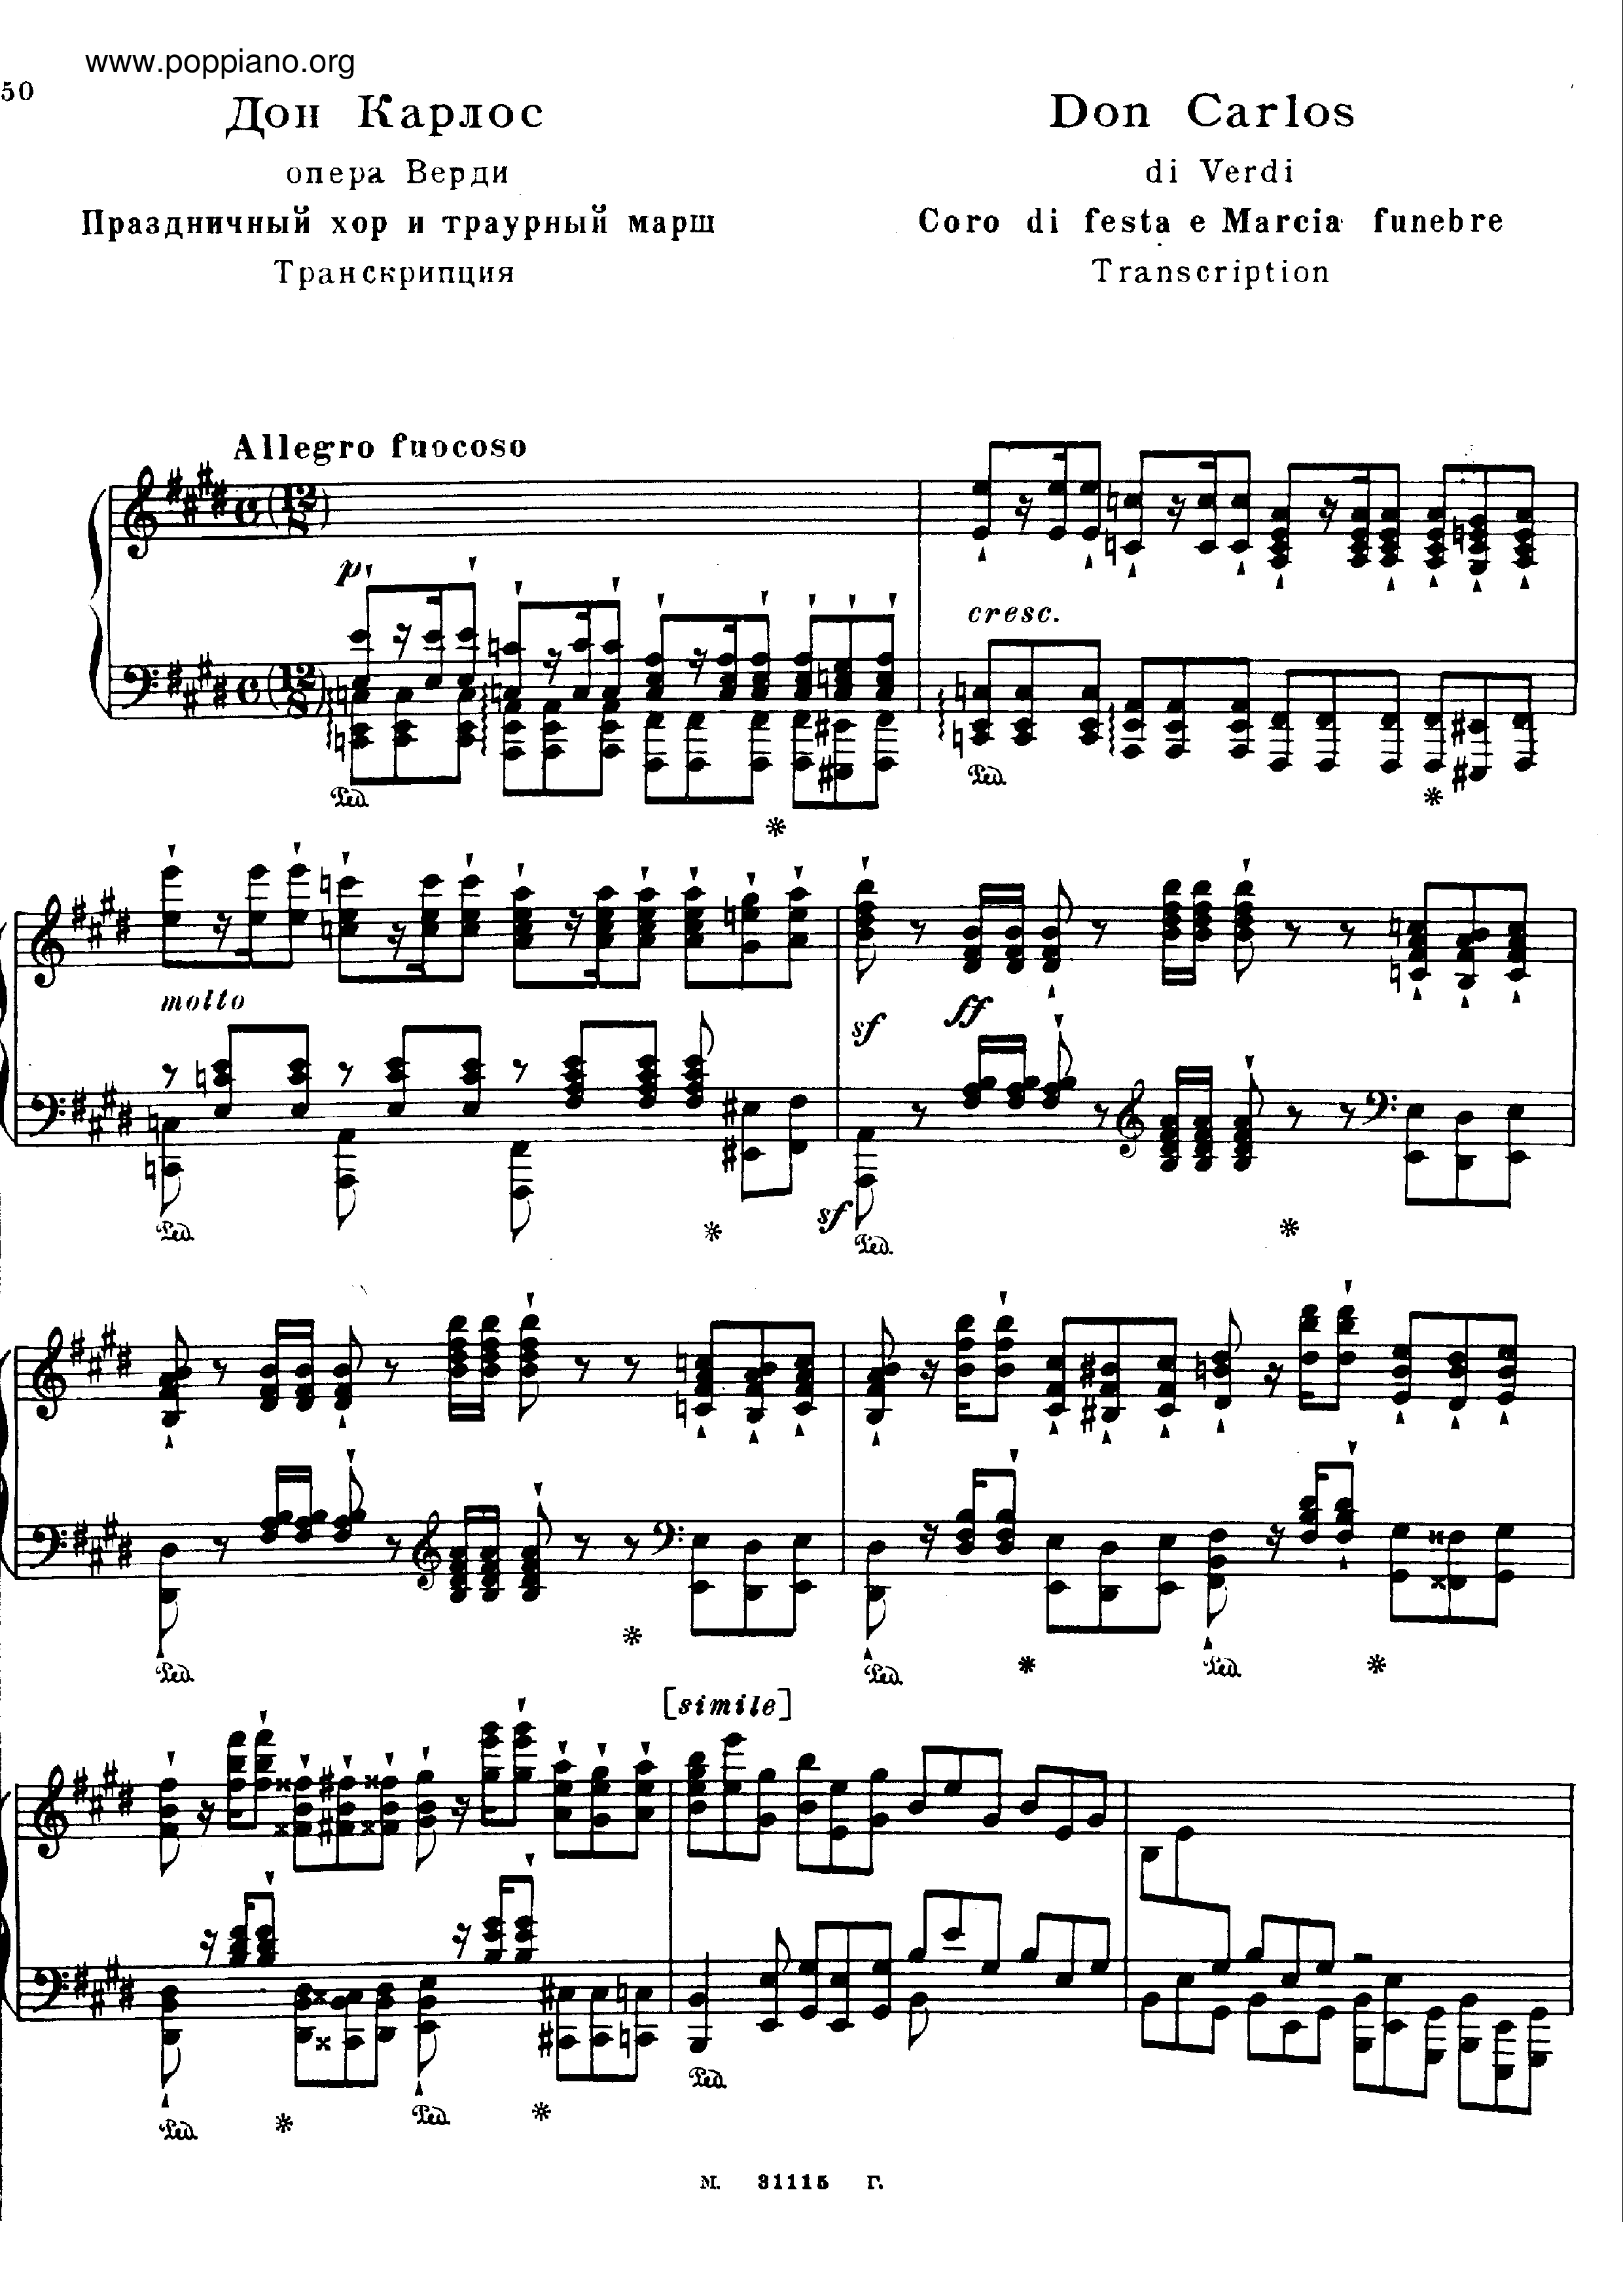 Don Carlos Coro e Marcia Funebre, by Verdi, S.435ピアノ譜